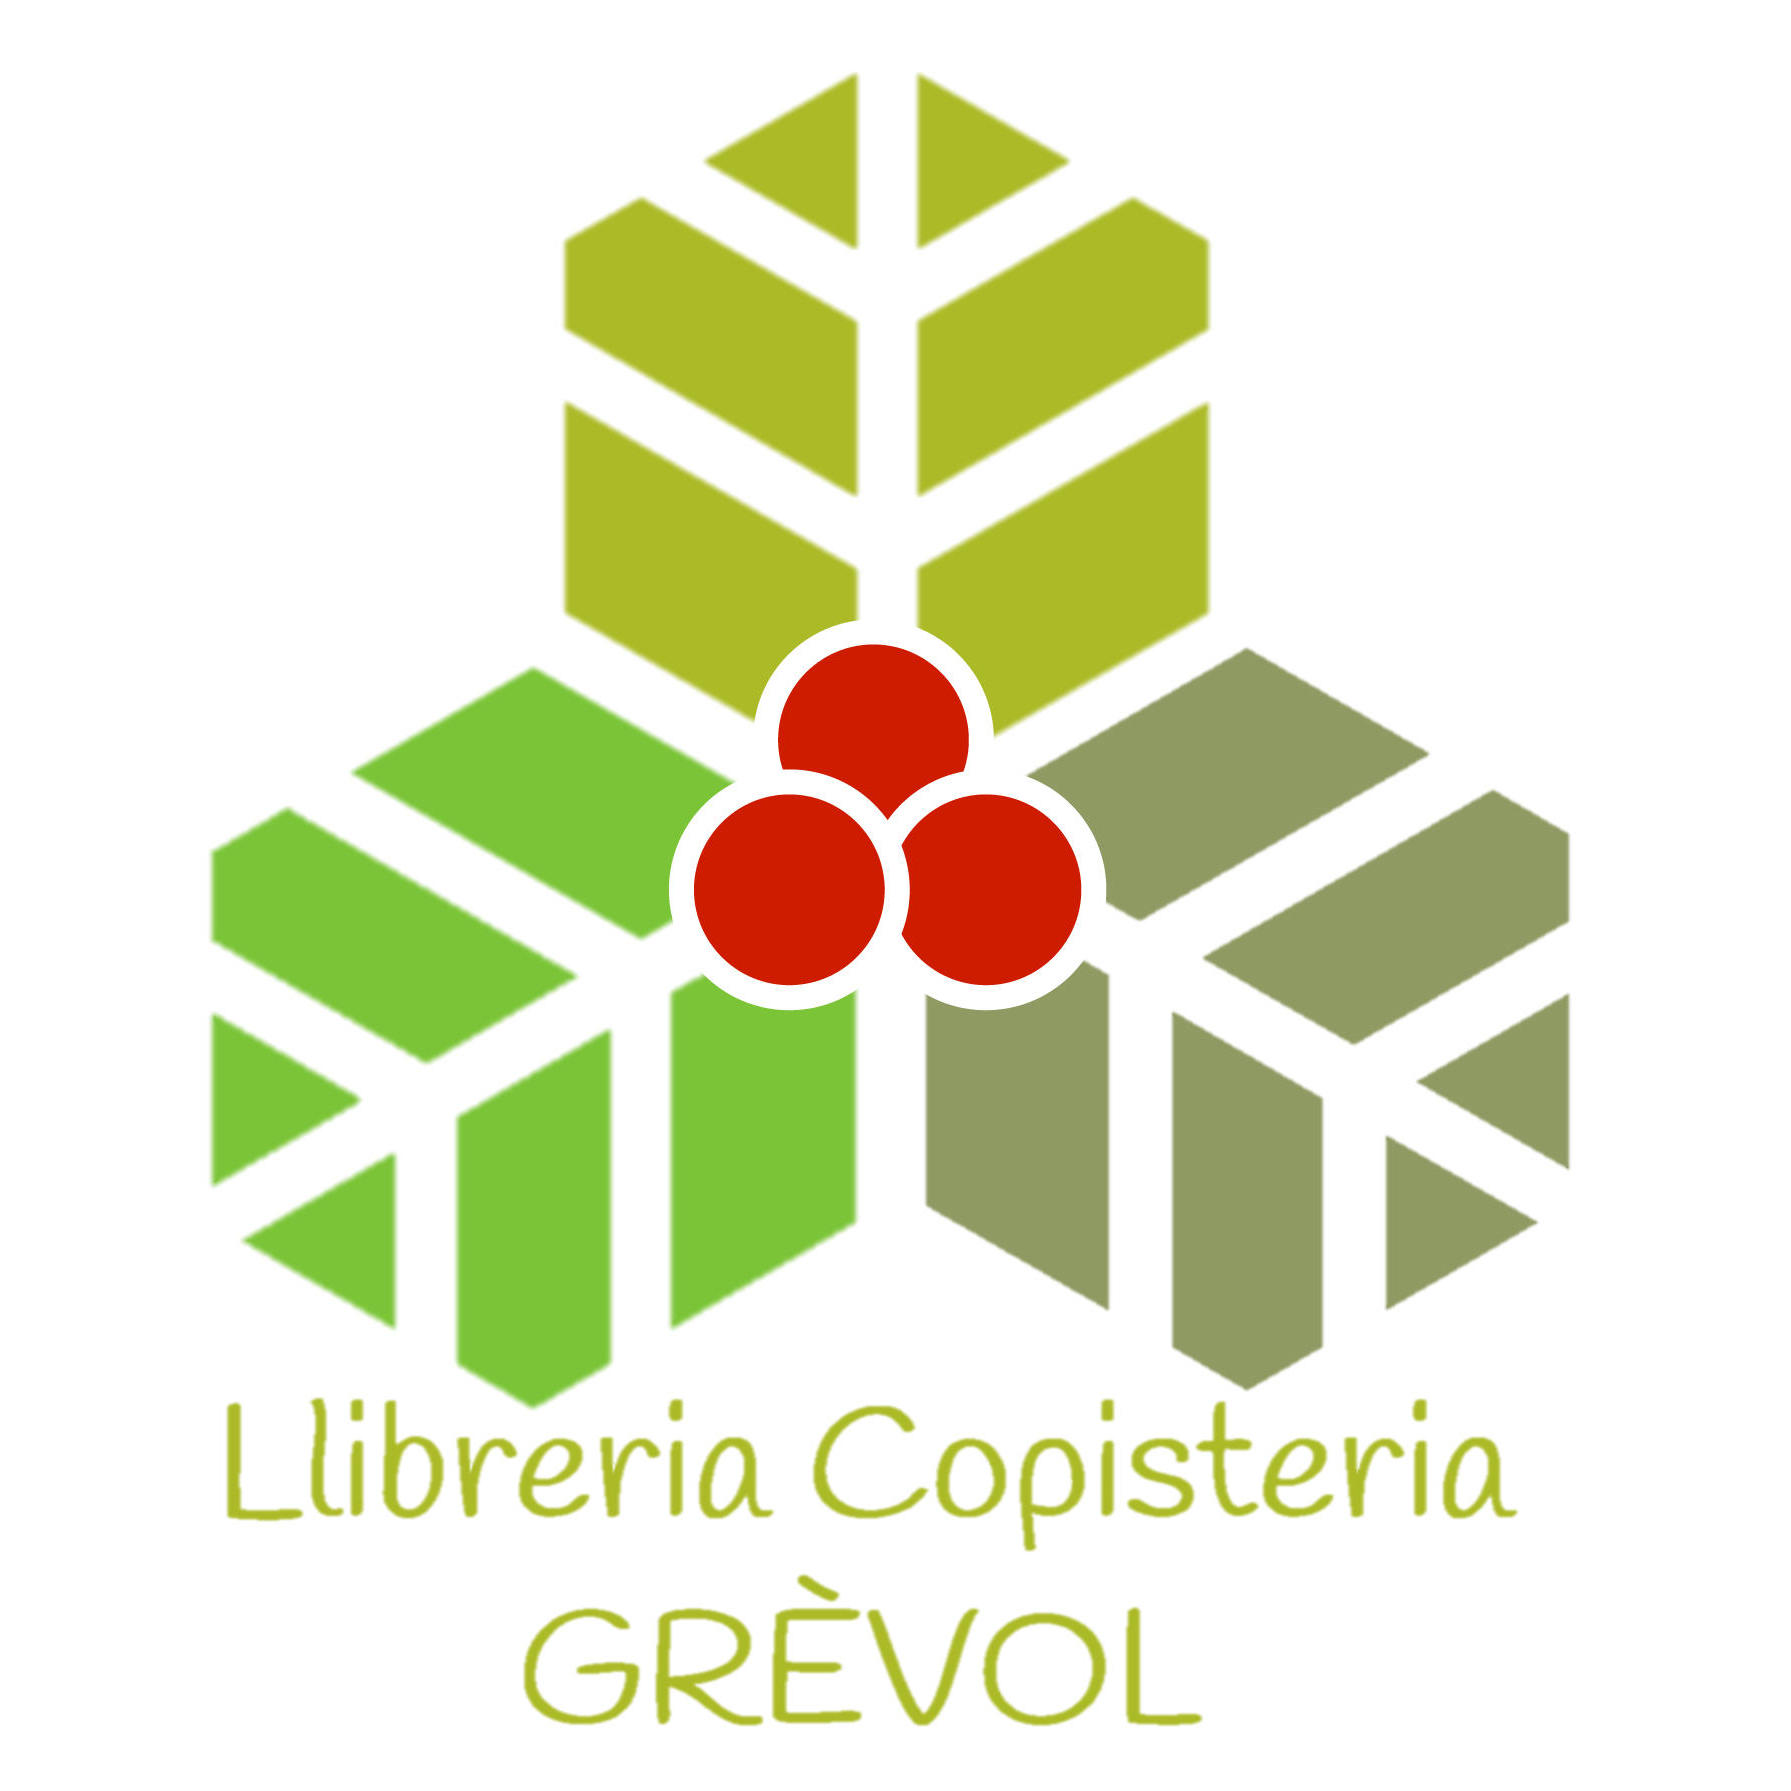 Copisteria Llibreria Grèvol Logo